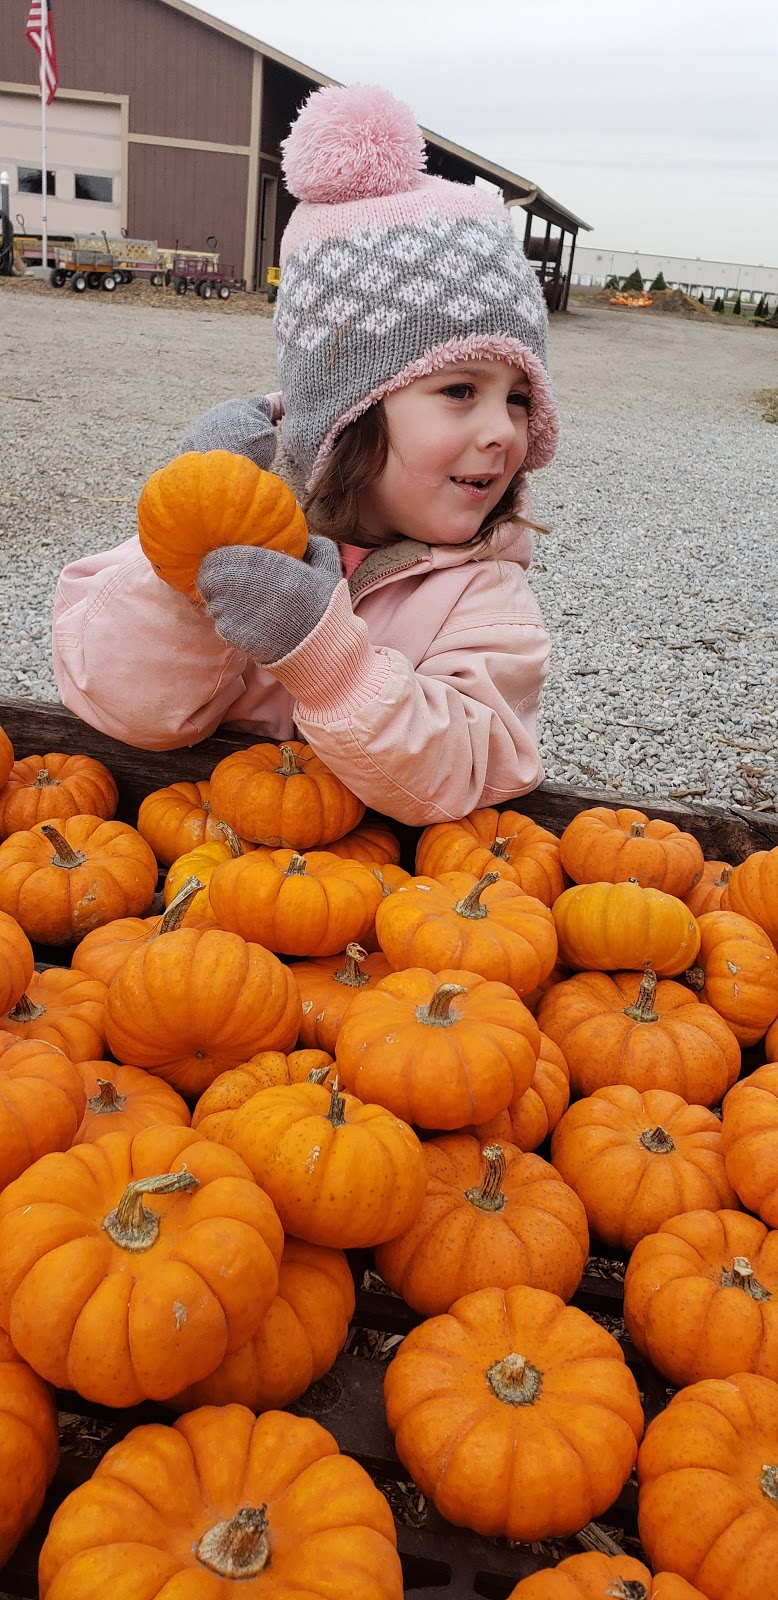 The Pumpkin Peddler